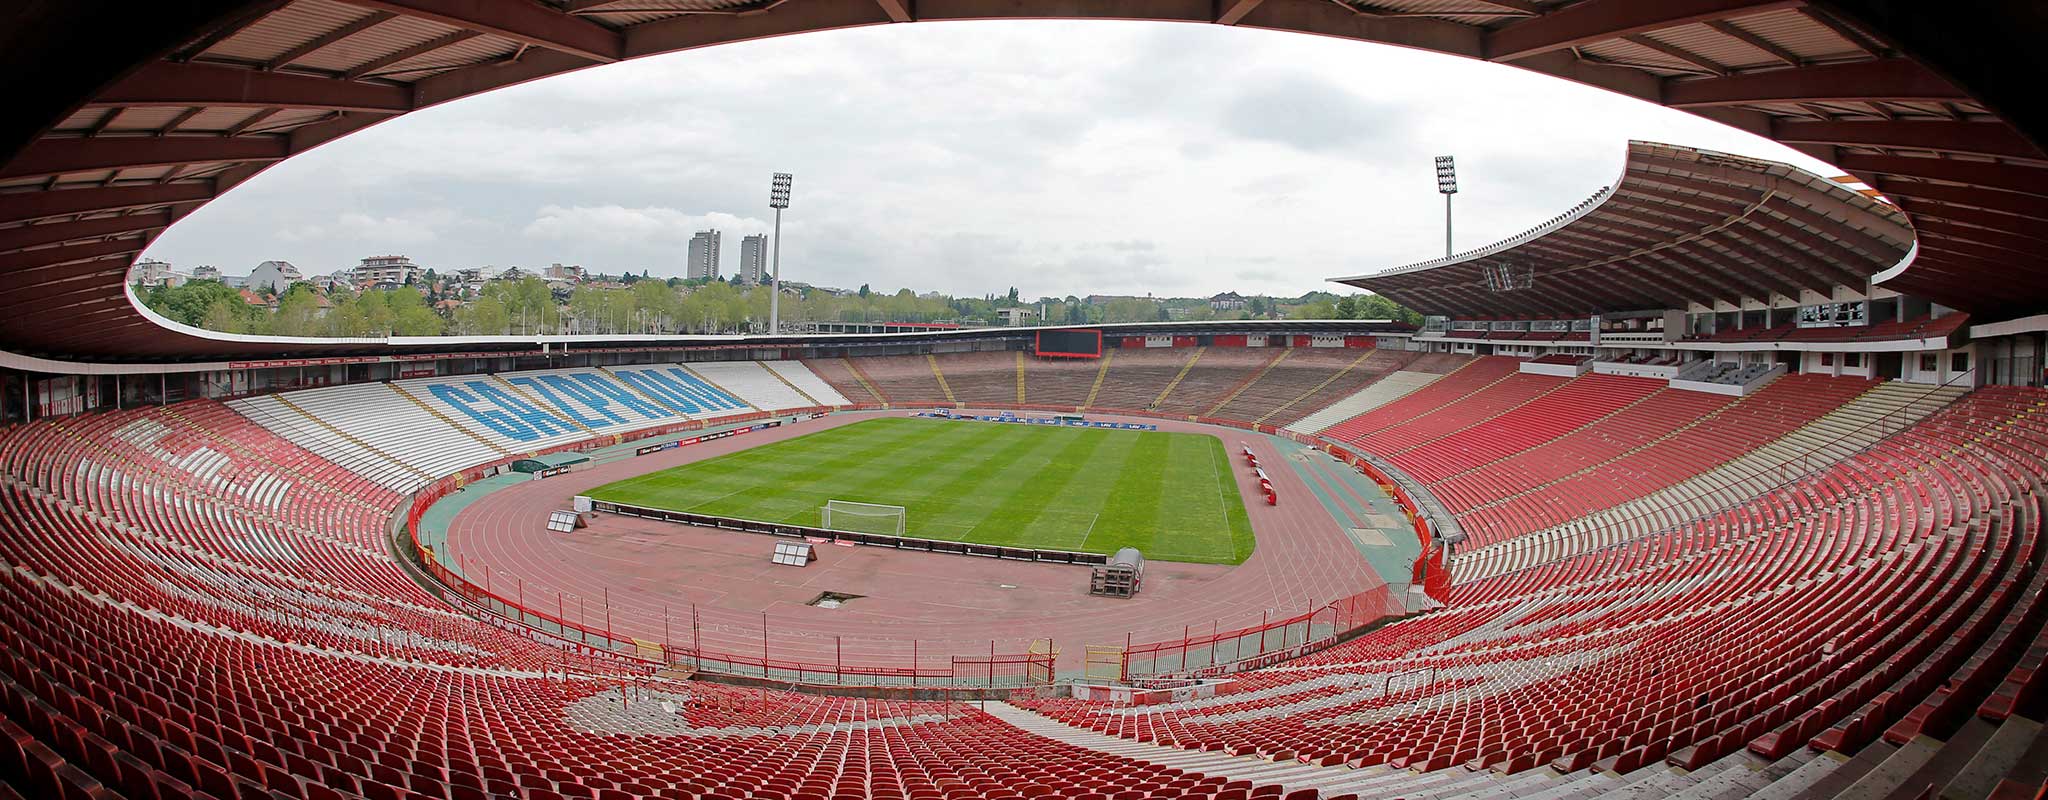 16 Fakta Rajko Mitic Stadium Ligalaga